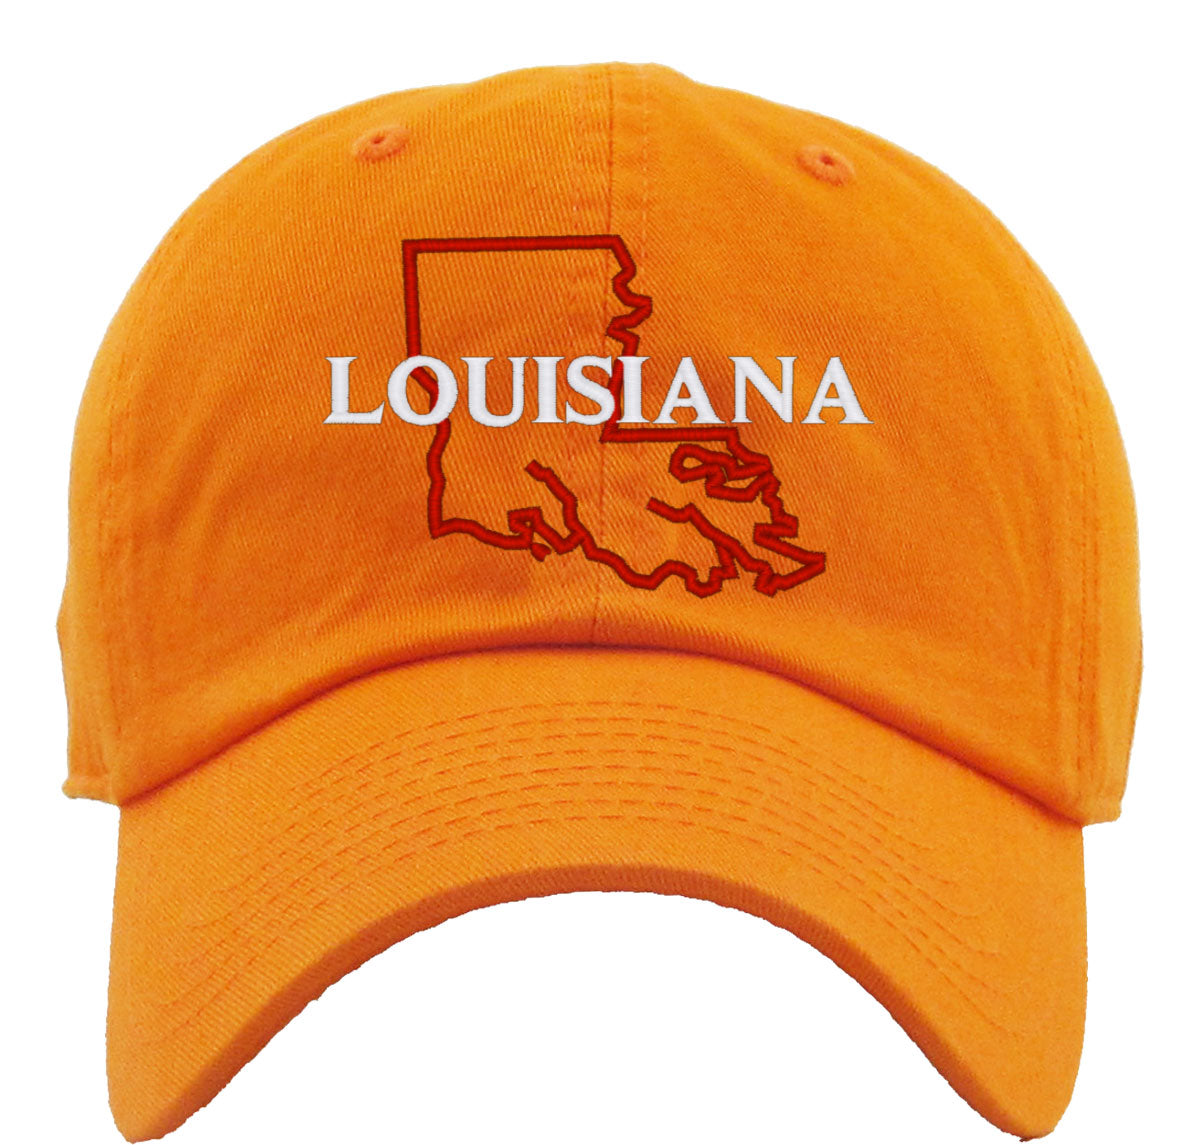 Louisiana Premium Baseball Cap